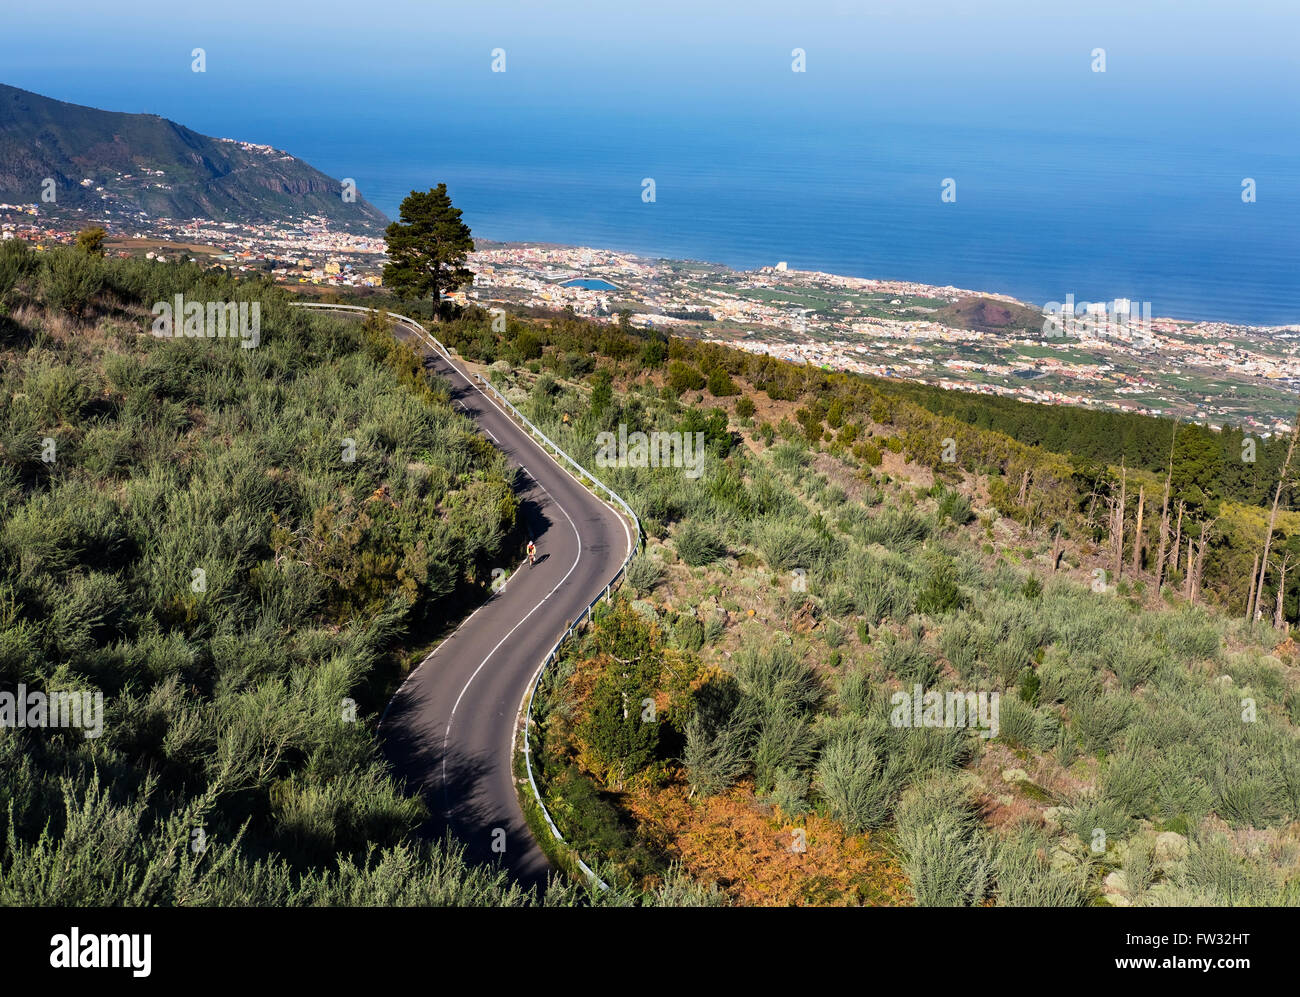 Carretera carretera de montaña del Teide, al Valle de La Orotava, Los Realejos detrás, Tenerife, Islas Canarias, España Foto de stock